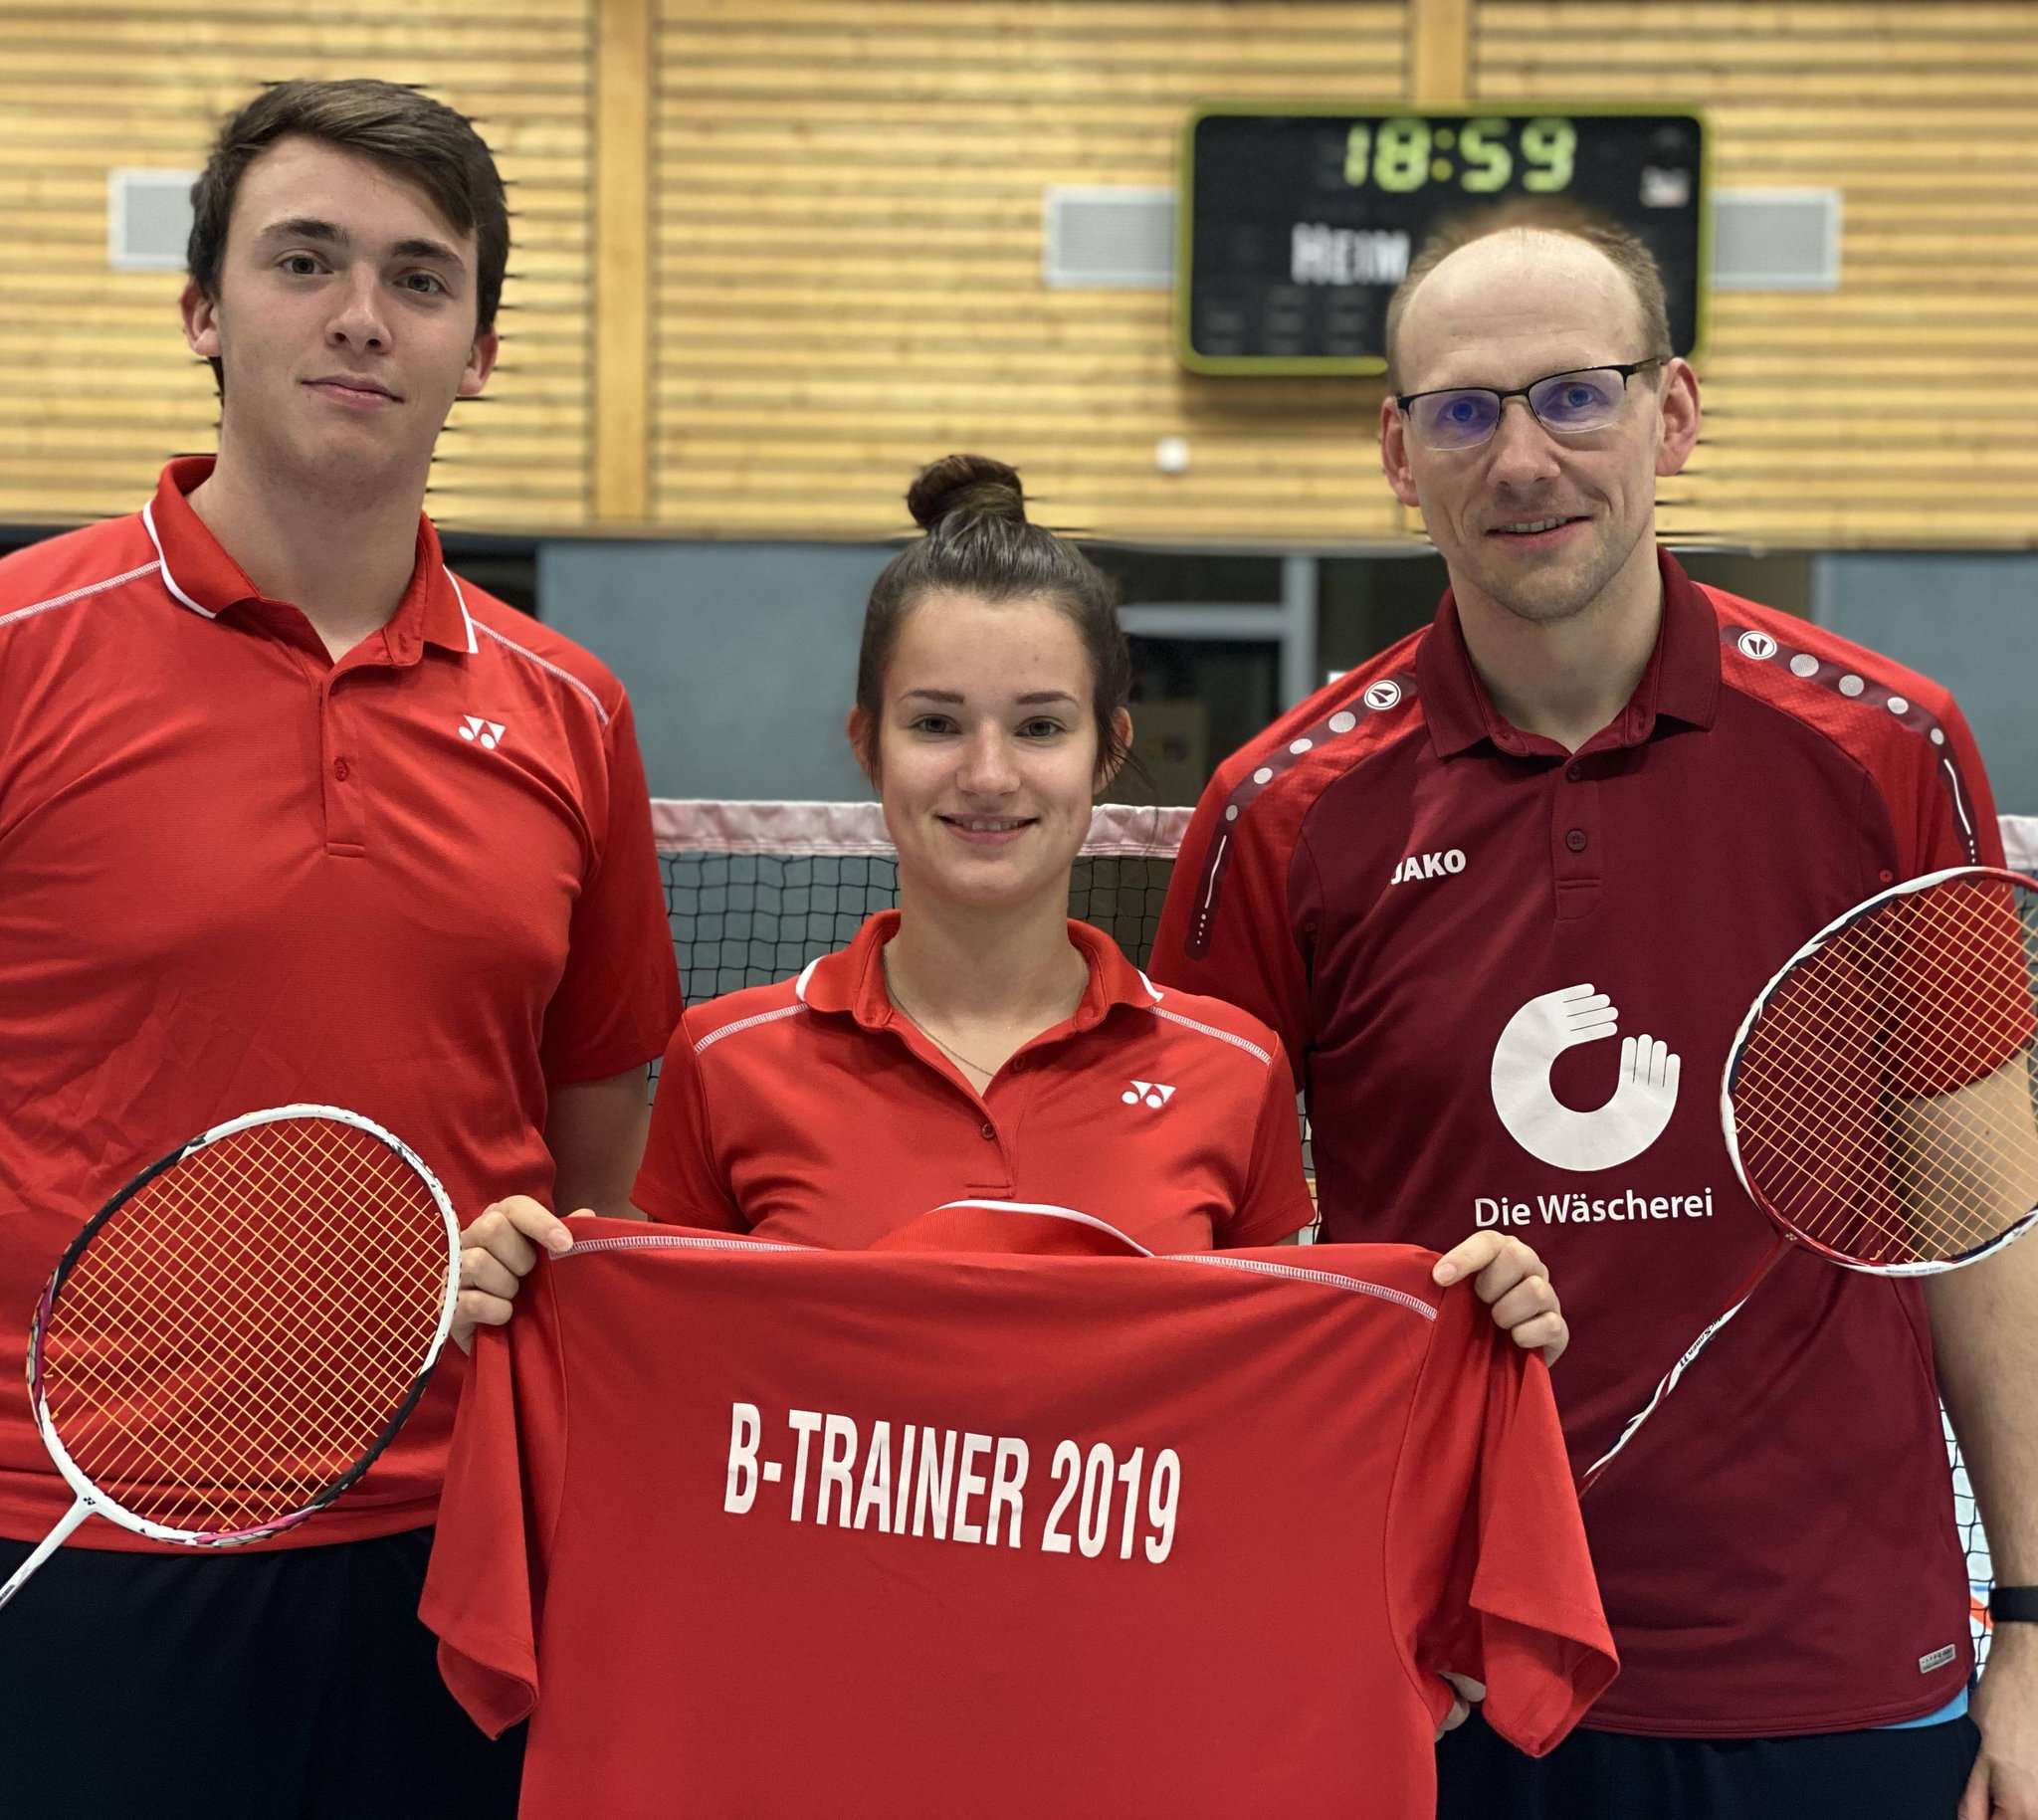 Yannick Rohdenburg (von links), Jacki Zühlke und Tobias Bergstermann sind nach erfolgreicher Ausbildung B-Trainer im Badminton.